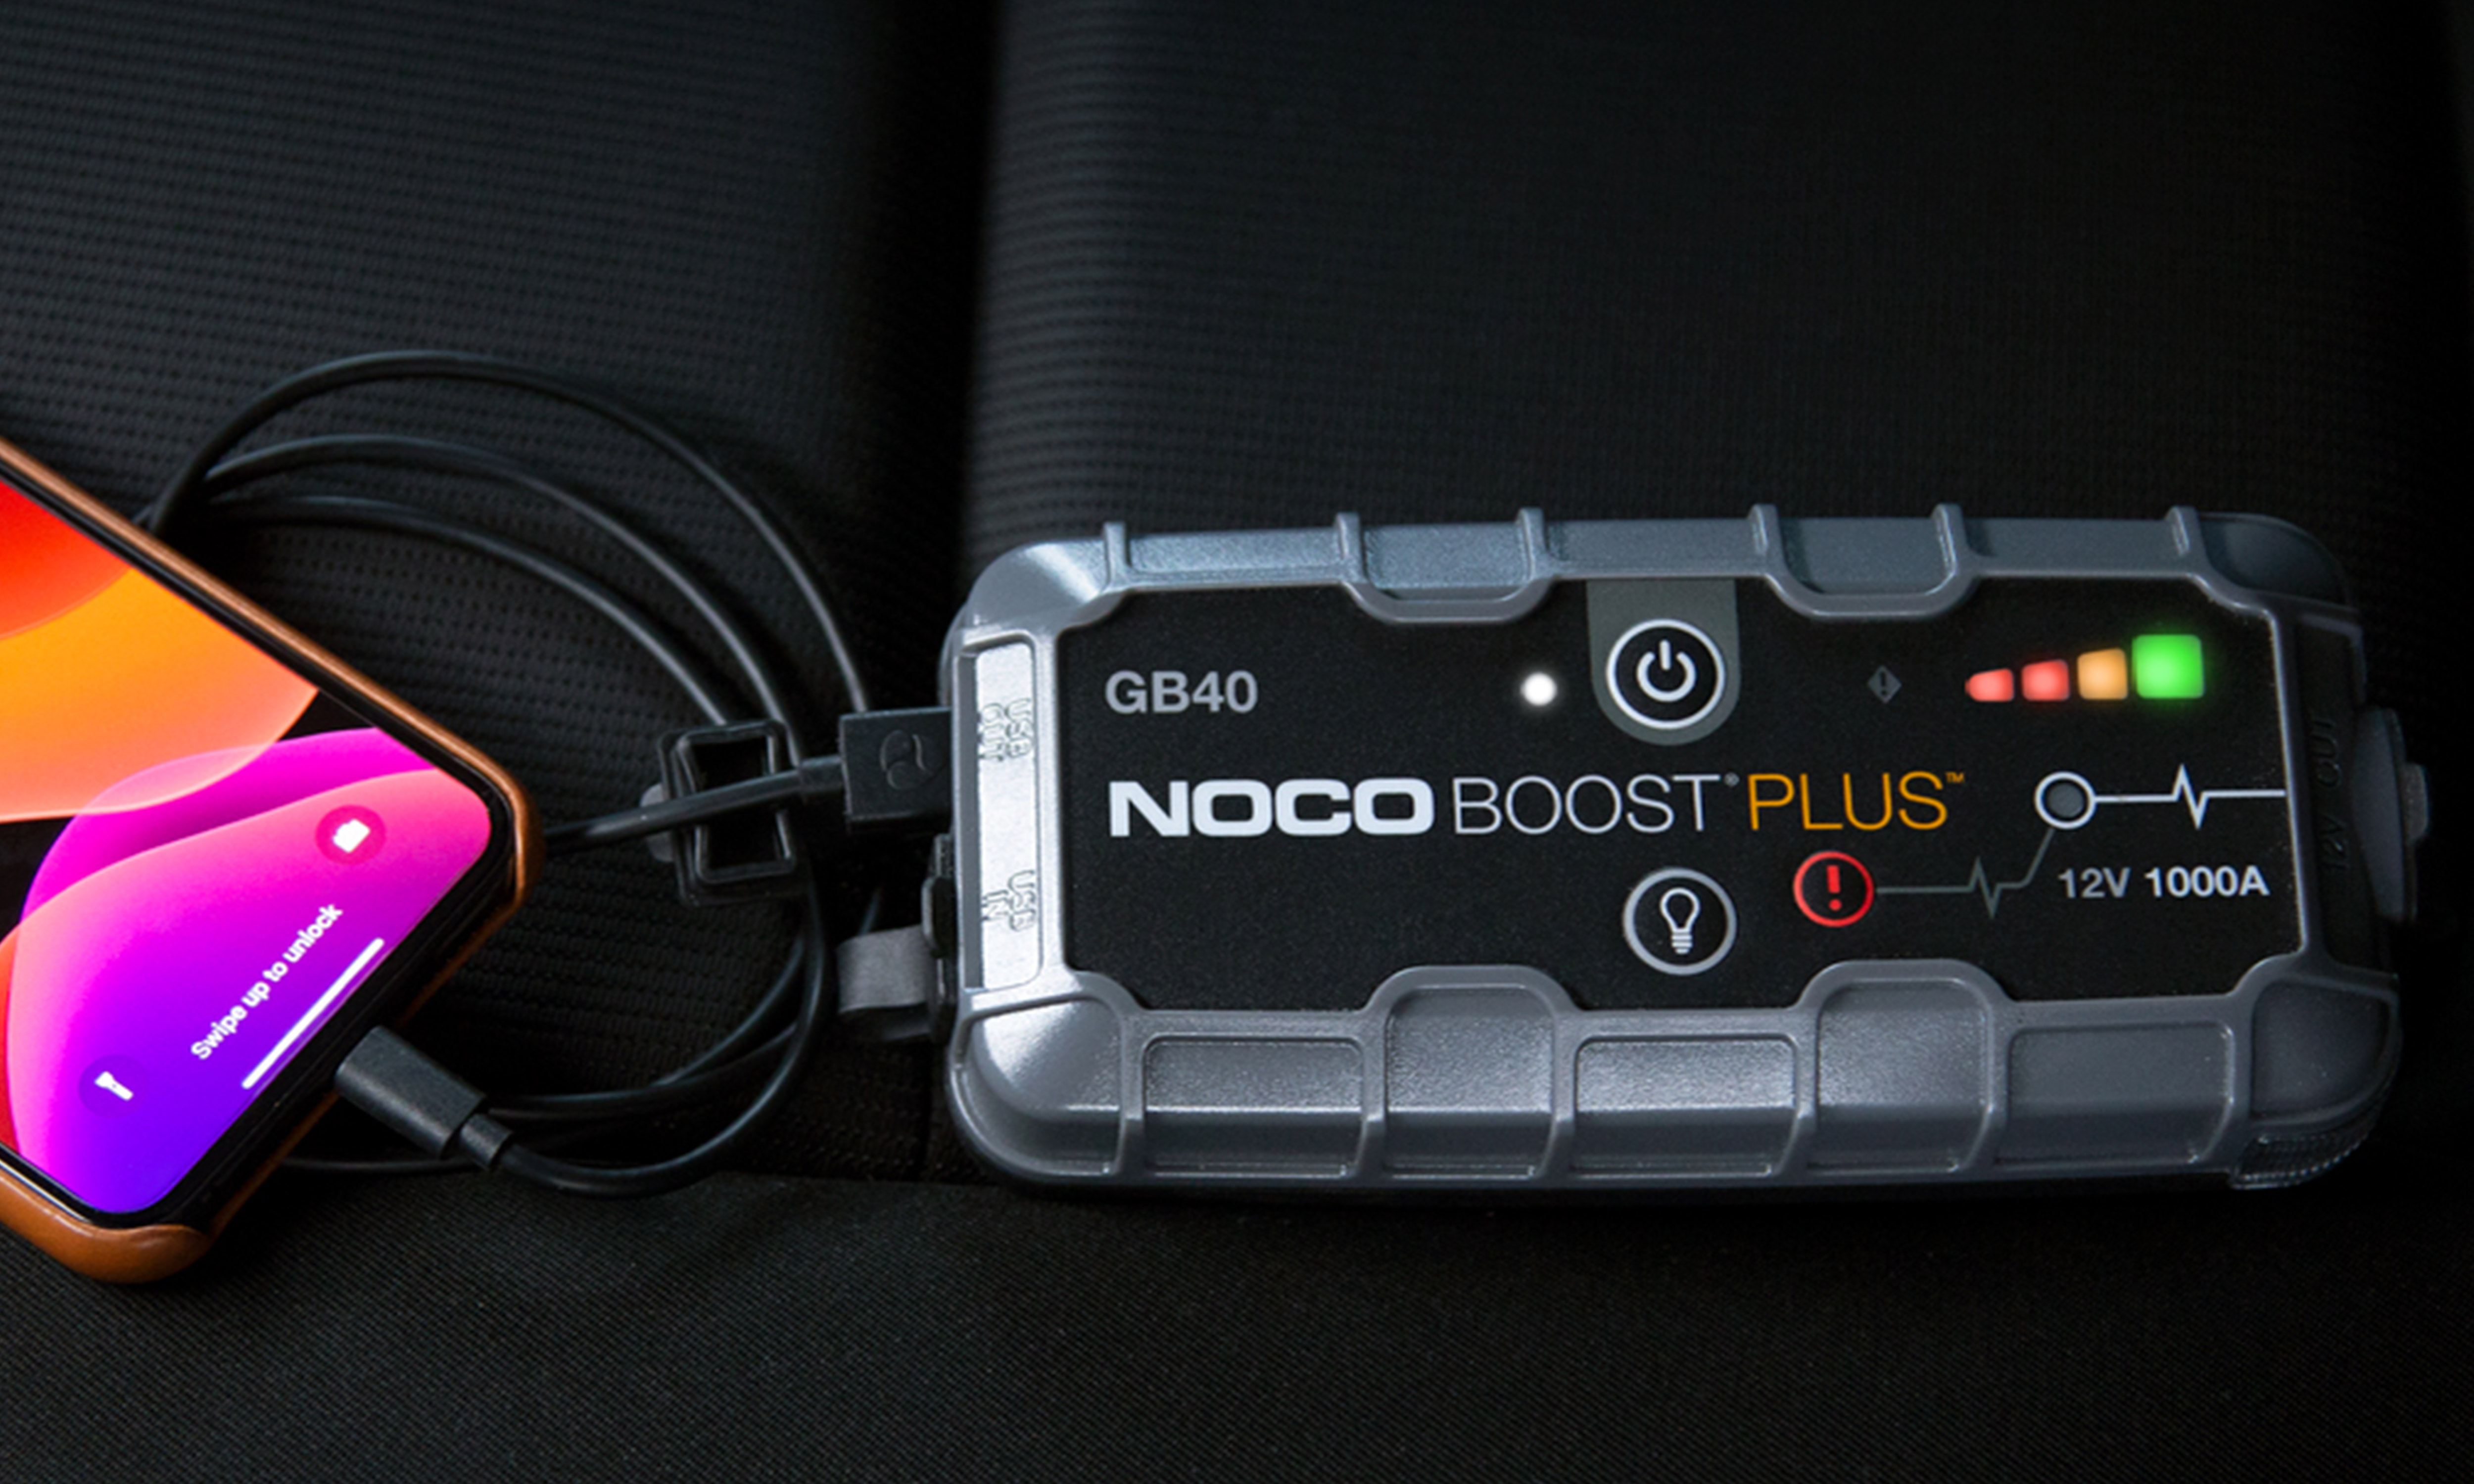 noco boost plus gb40 recharging